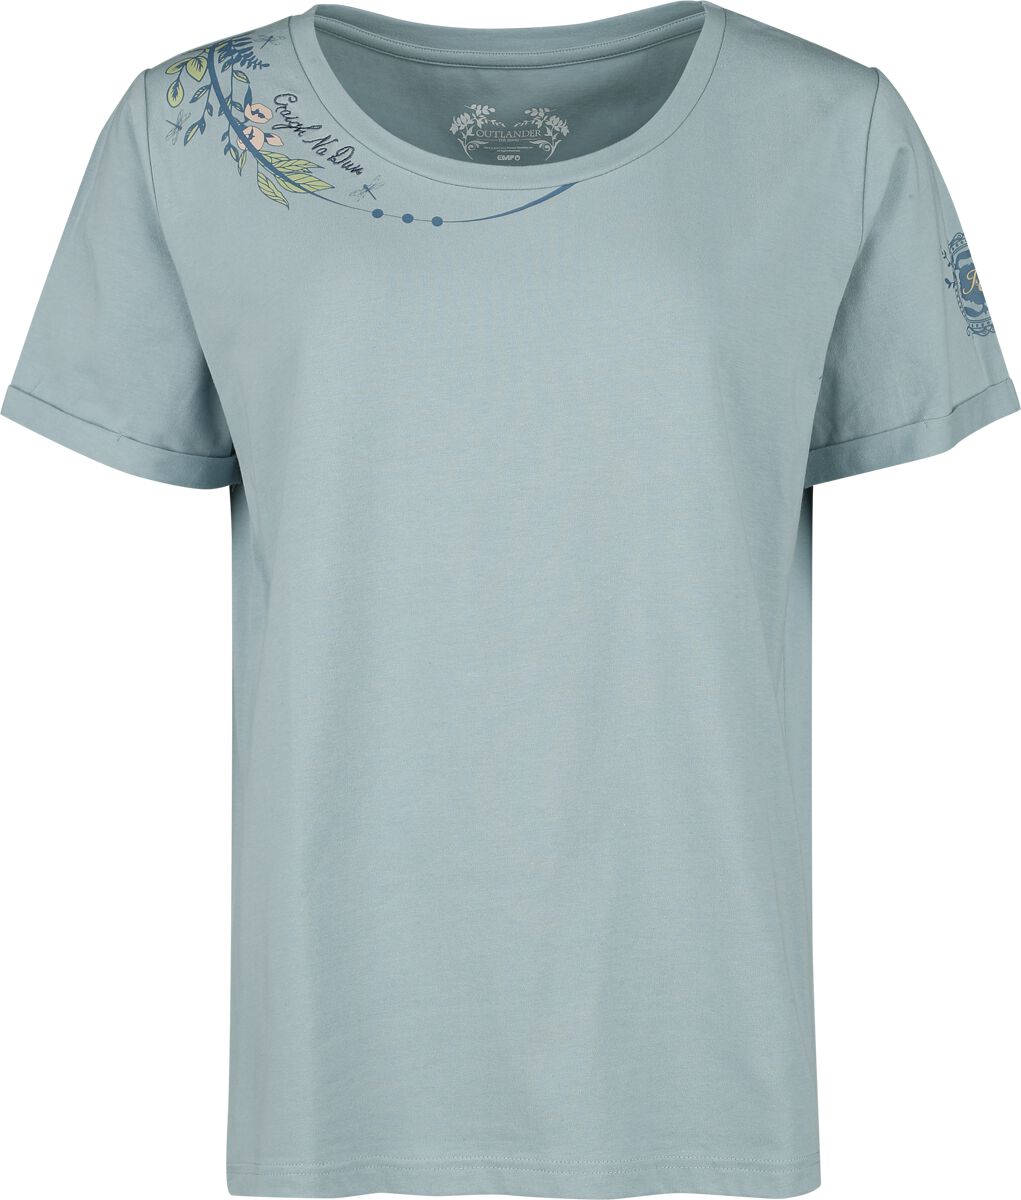 Outlander Craigh Na Dun T-Shirt blau in XXL